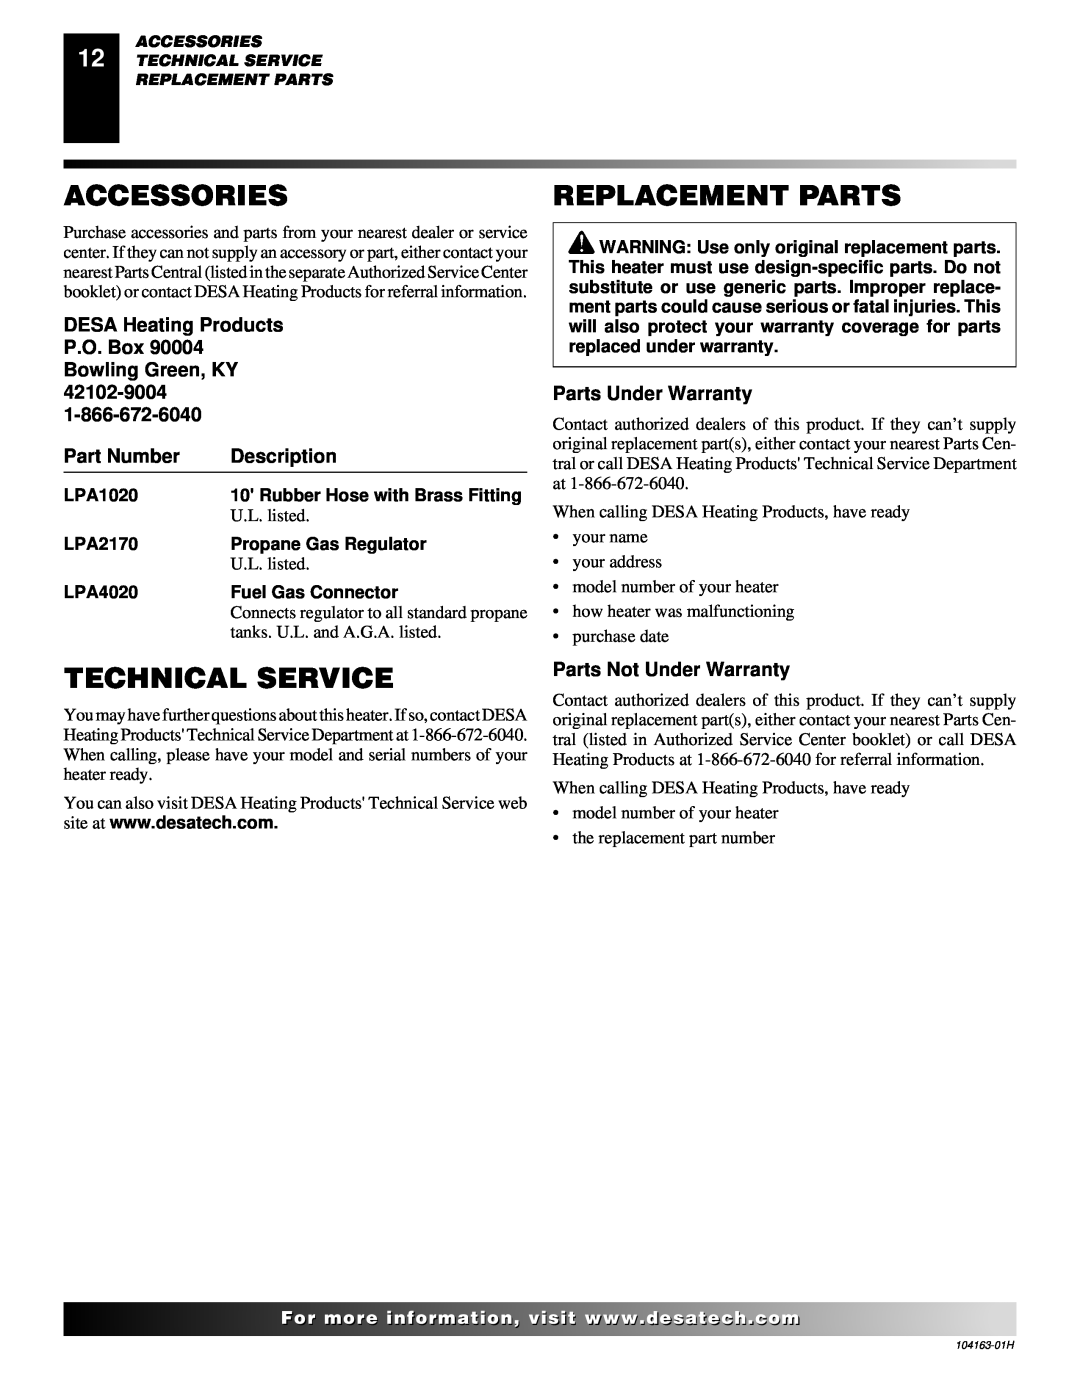 Desa REM30LP Accessories, Replacement Parts, Technical Service, Part Number, Description, Parts Under Warranty, LPA1020 